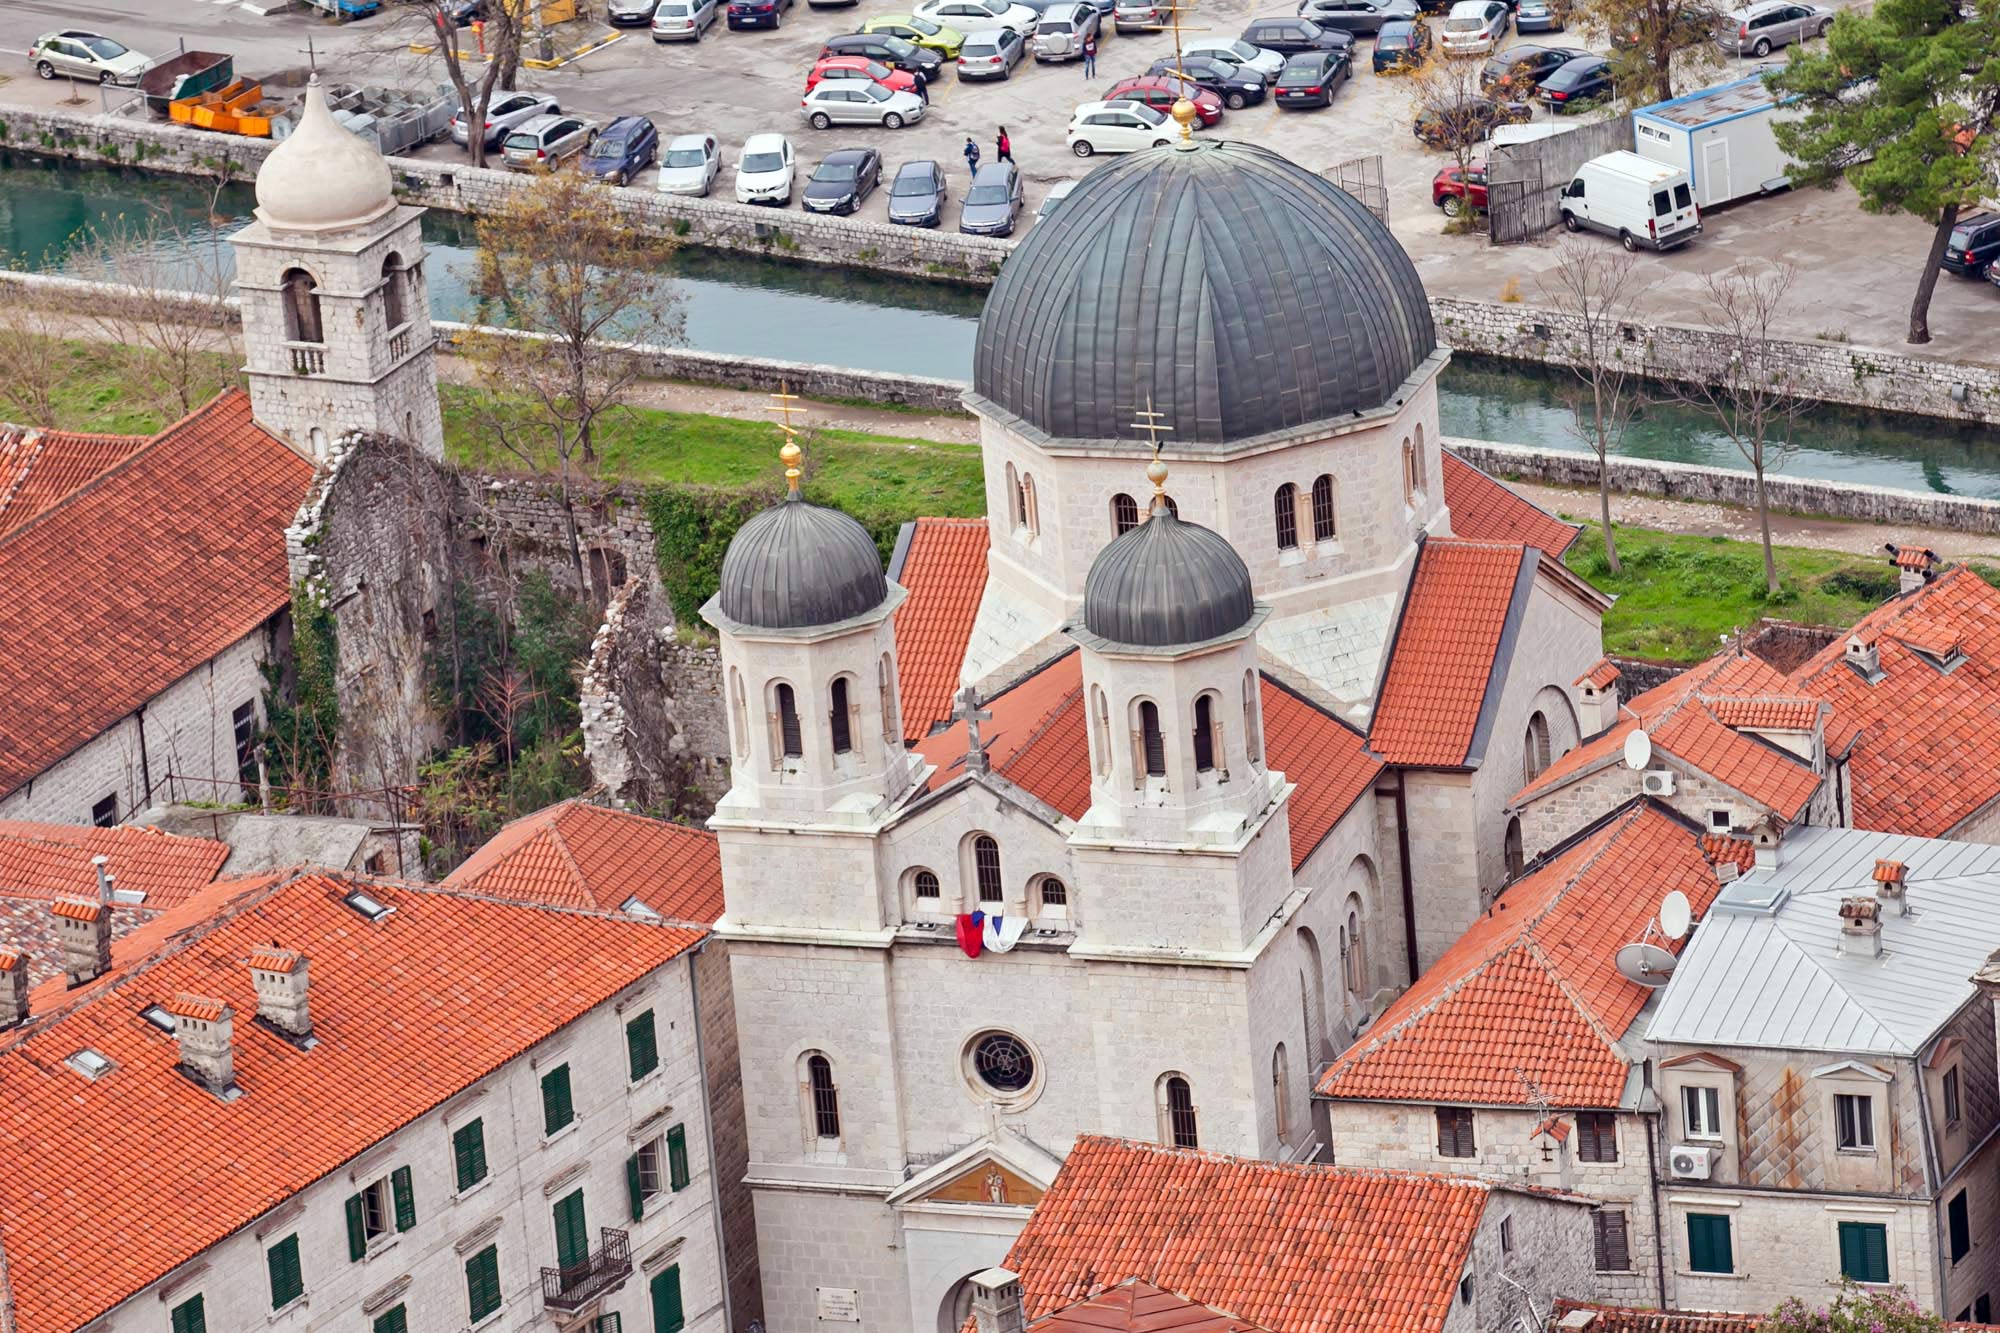 Kotor basilica